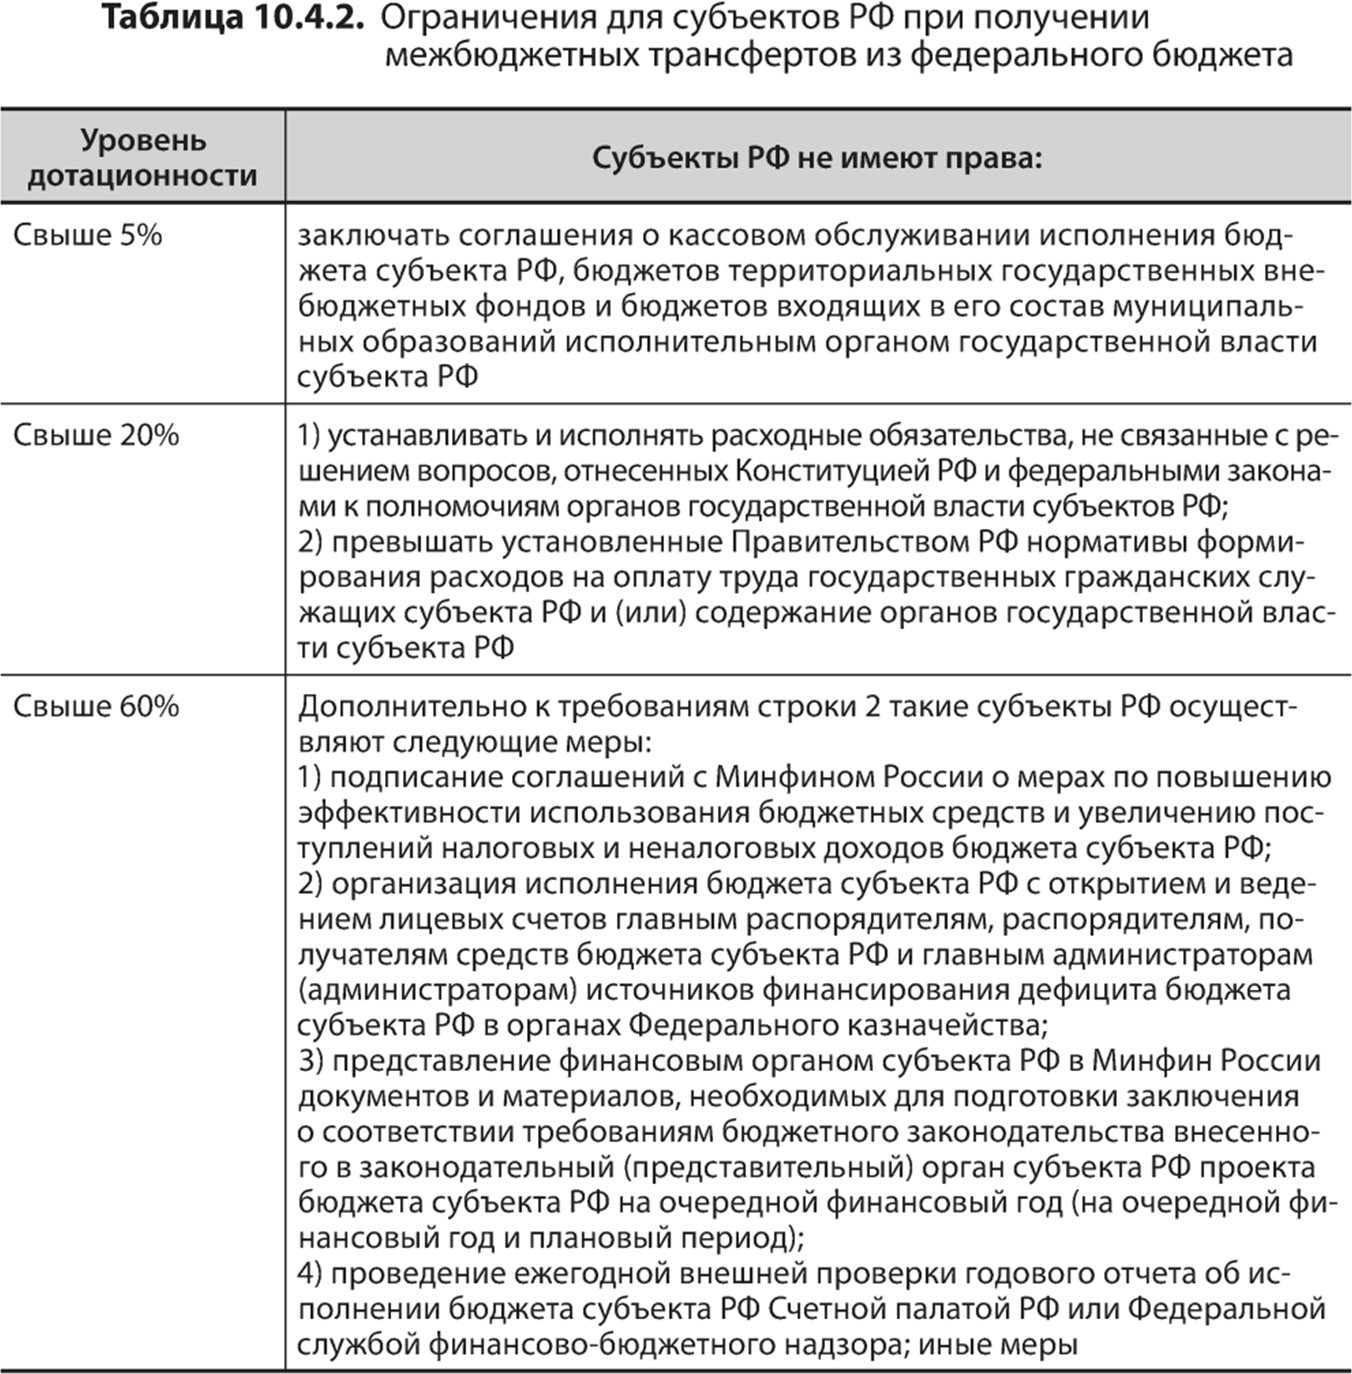 Ограничения для субъектов РФ при получении межбюджетных трансфертов из федерального бюджета